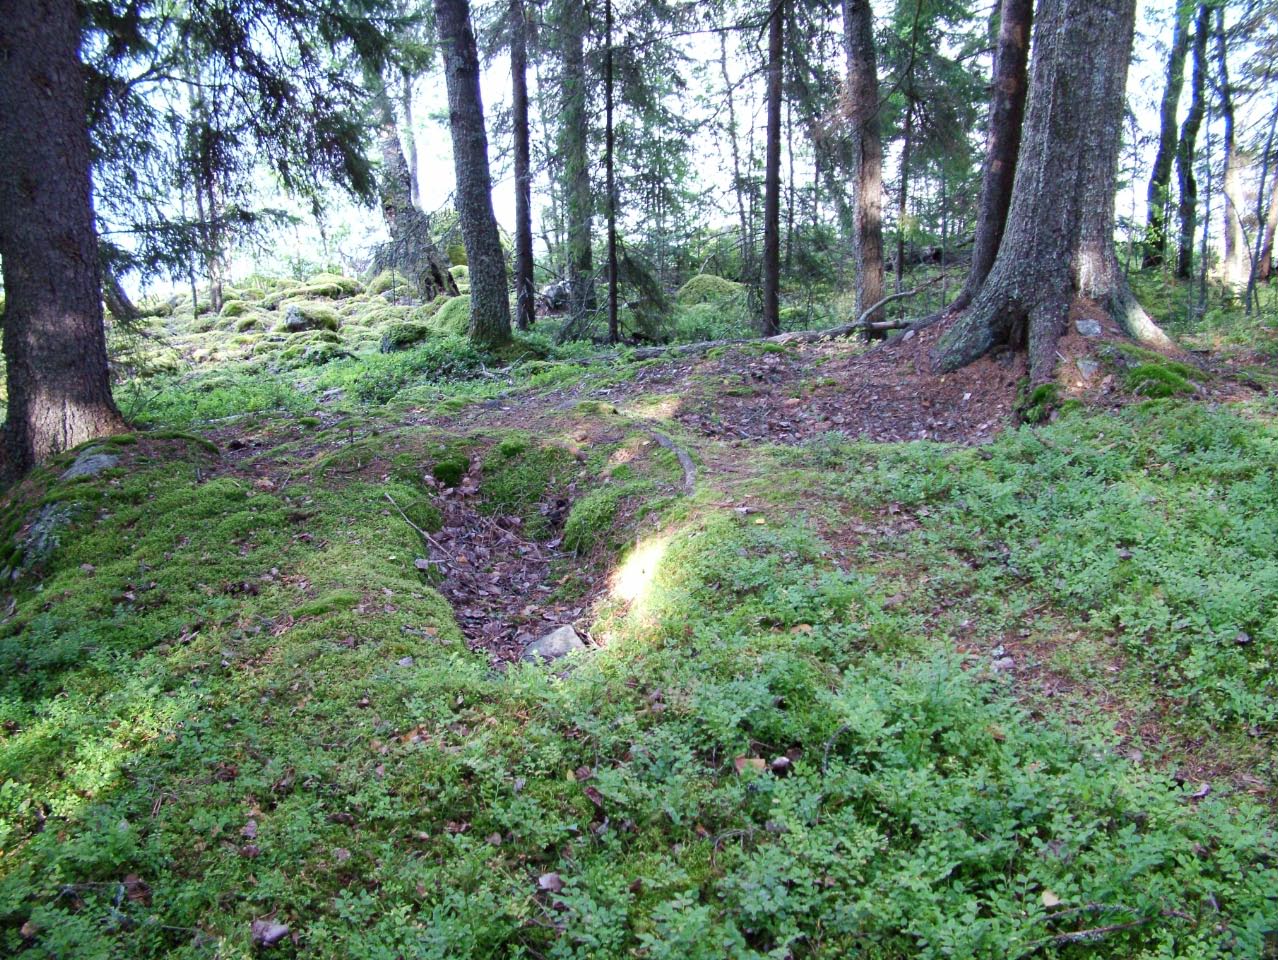 Kuva: Syvä hautamainen painanne Ruumissaaren pohjoisosassa. Kuvattu itään. Juha Ruohonen. CC BY 4.0 Juha Ruohonen 14.8.2008